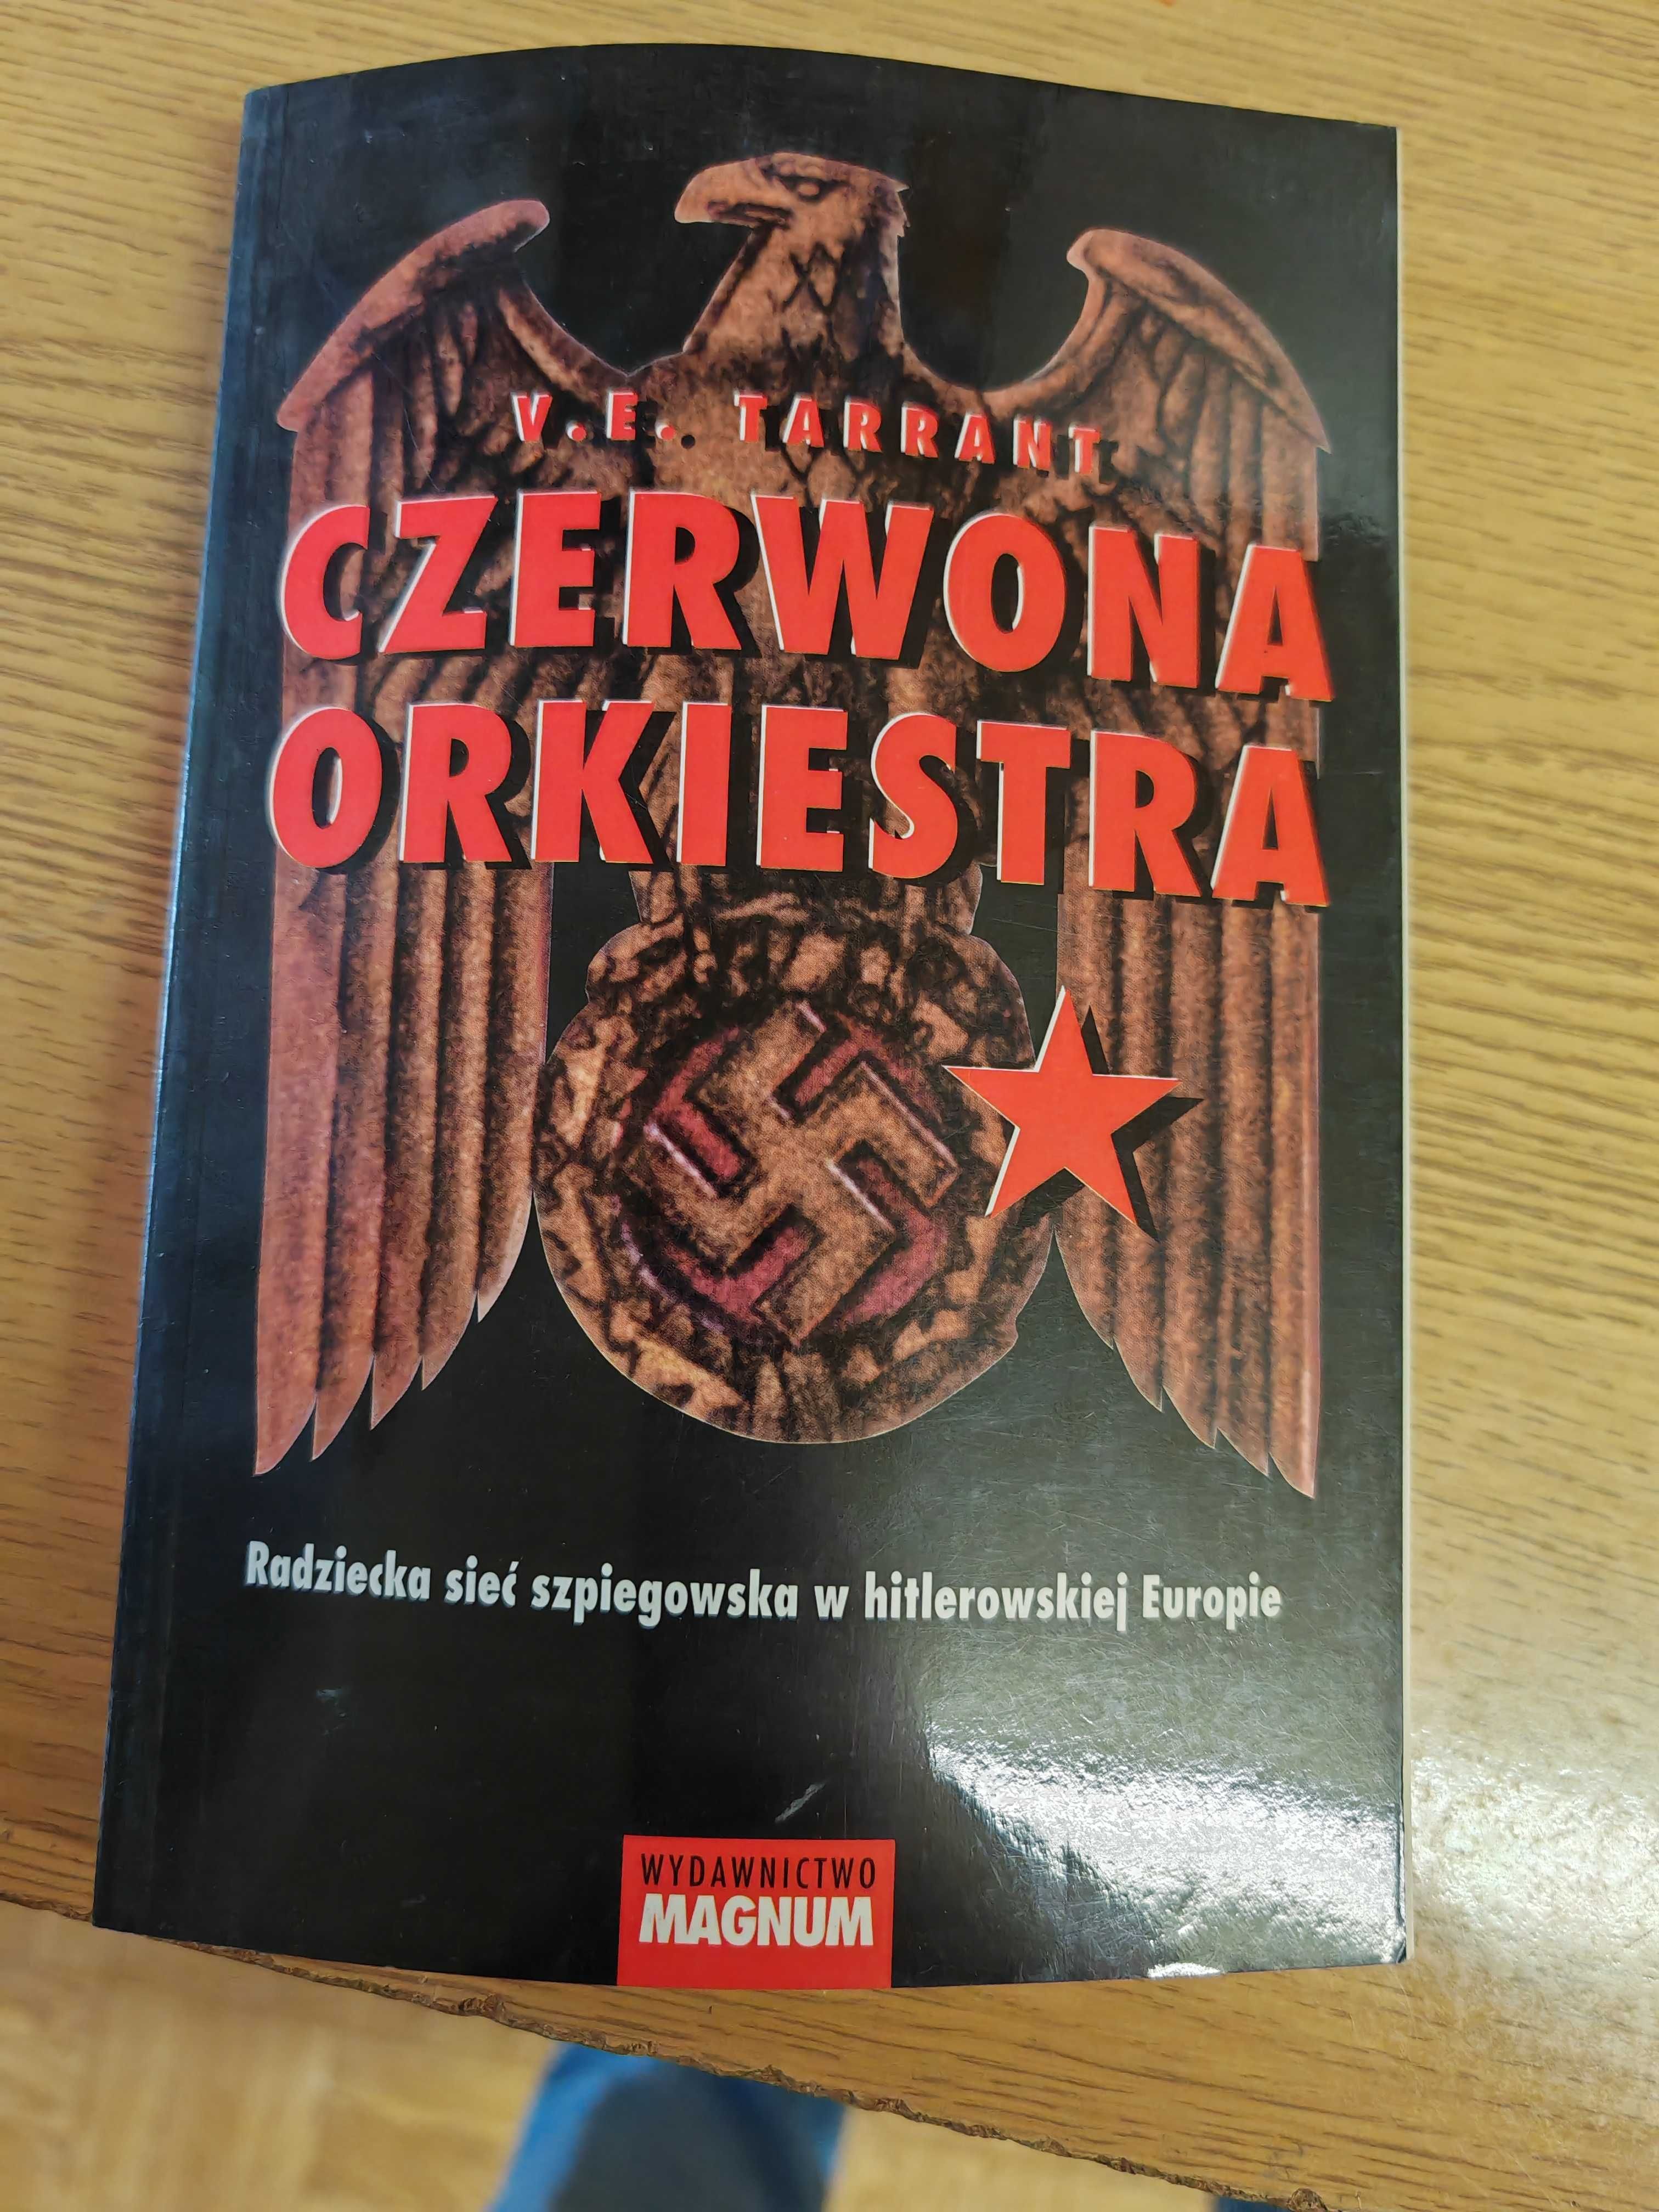 V.E.Tarrant CZERWONA orkiestra